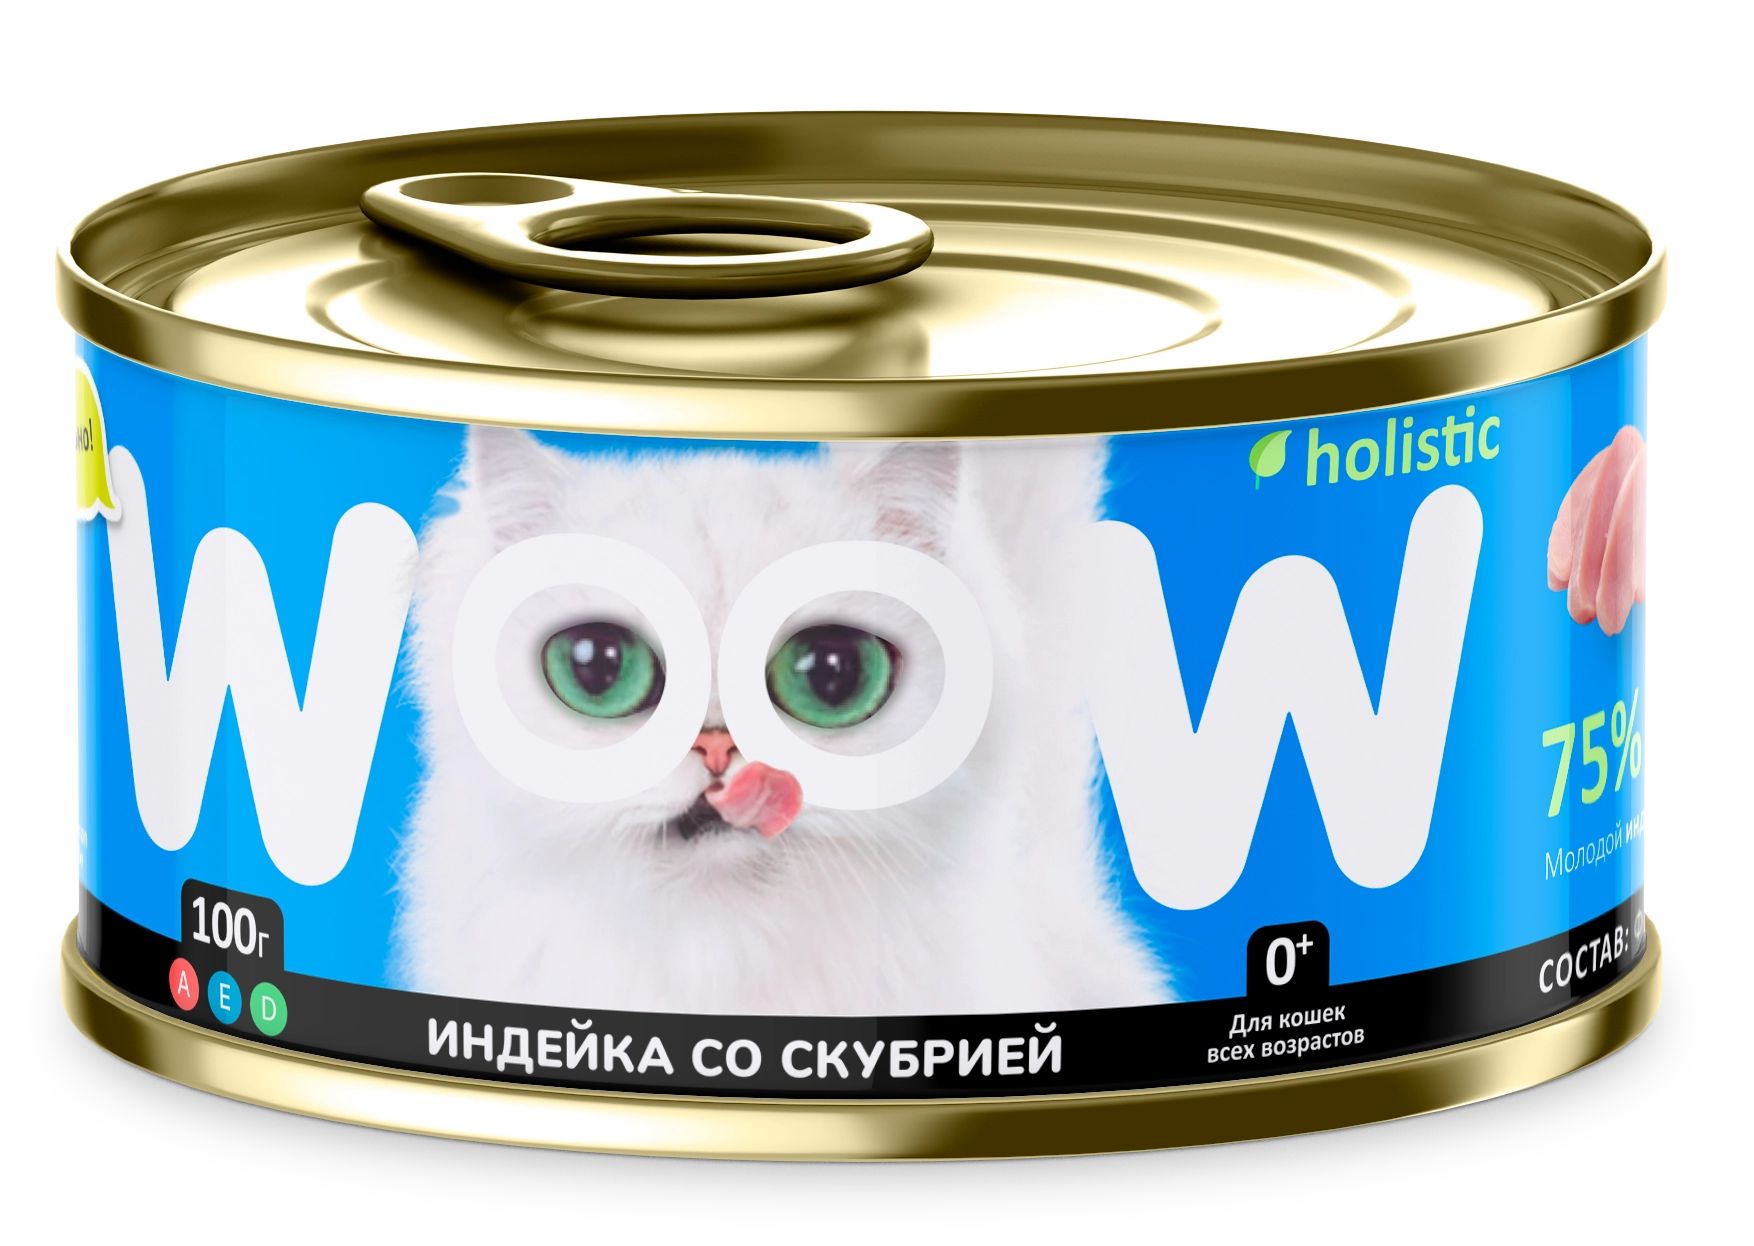 Консервы для кошек WOOW.holistic, цыпленок со скумбрией, 100г